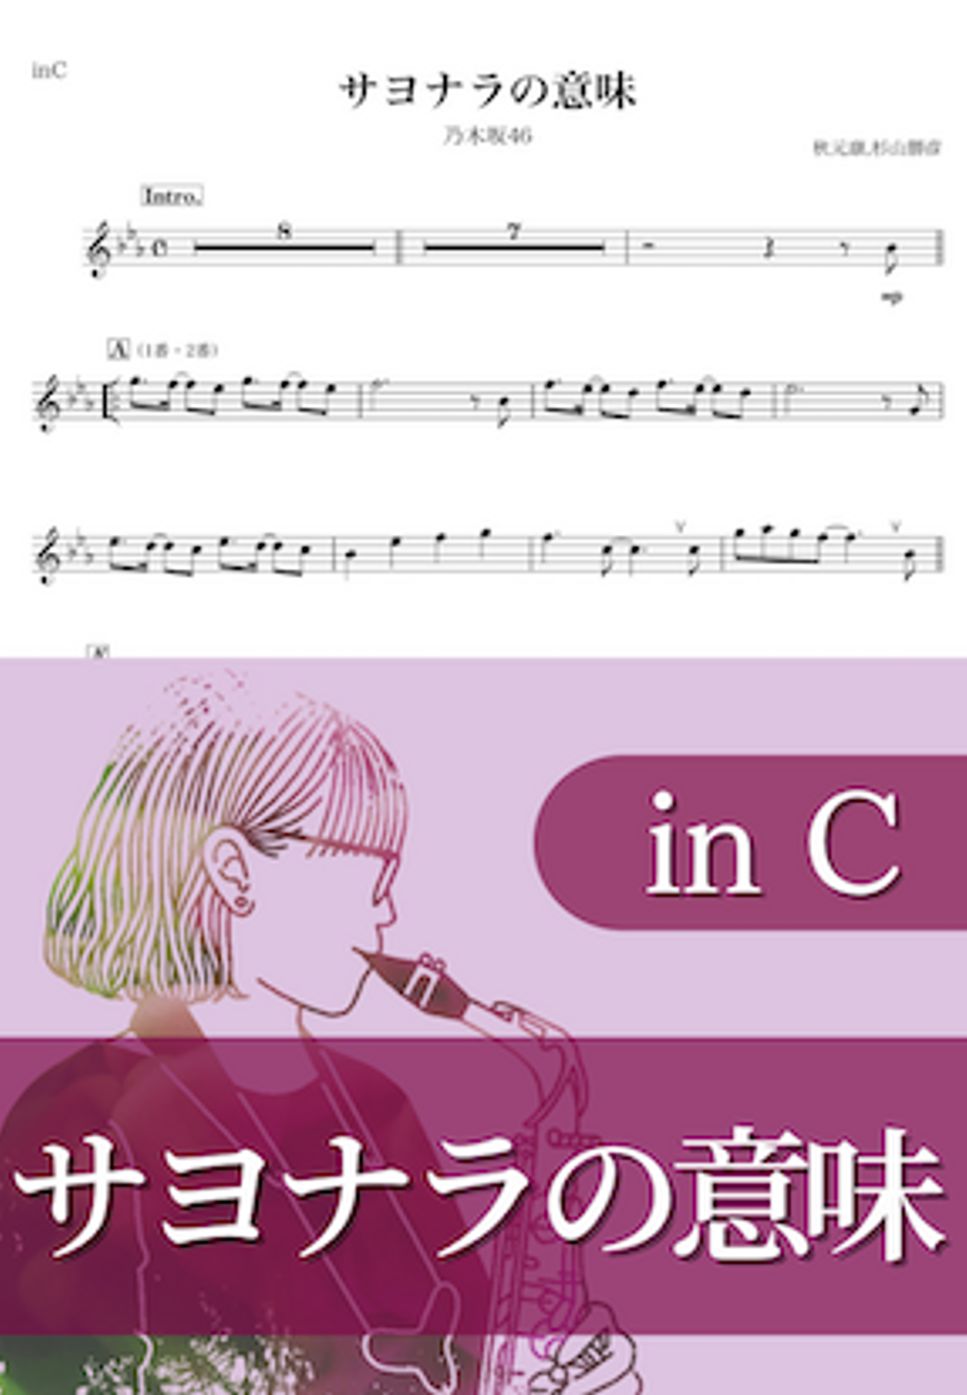 乃木坂46 - サヨナラの意味 (C) by kanamusic